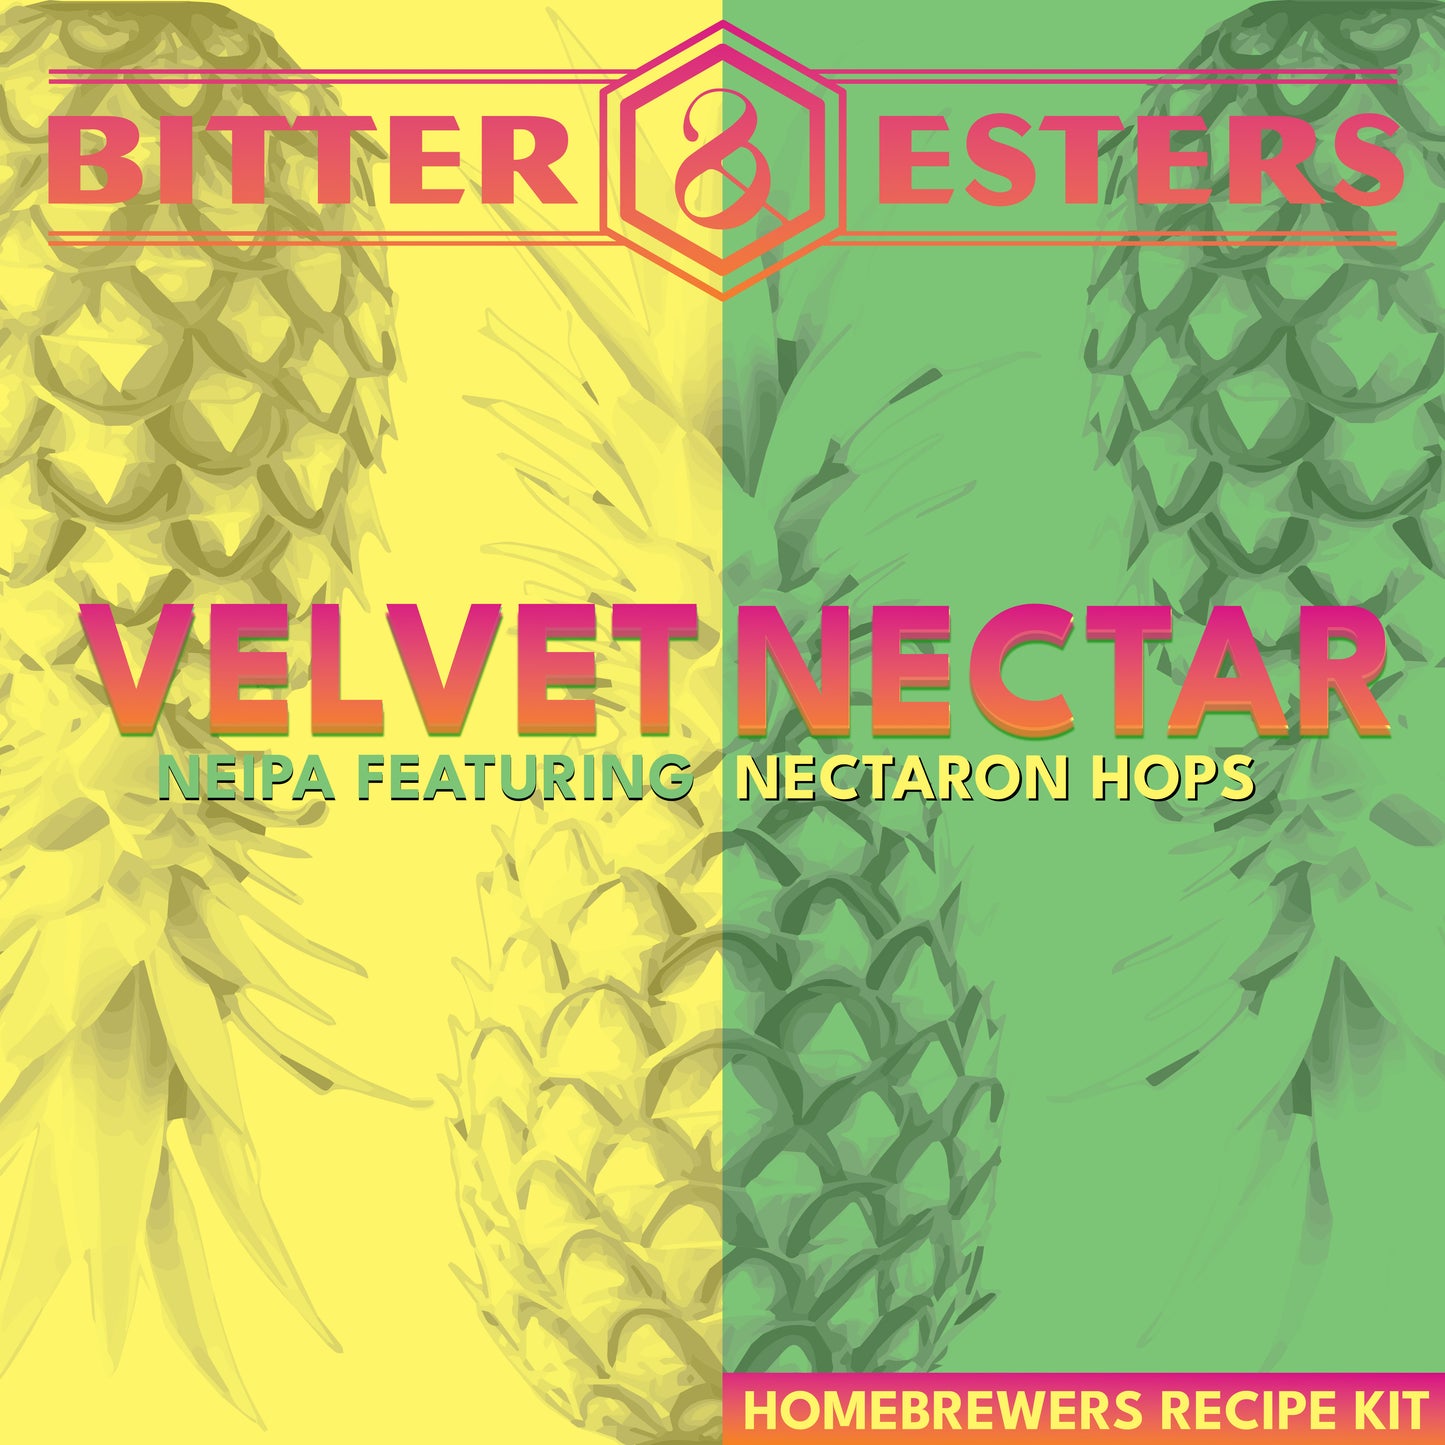 Velvet Nectar NEIPA - Homebrewers Recipe Kit